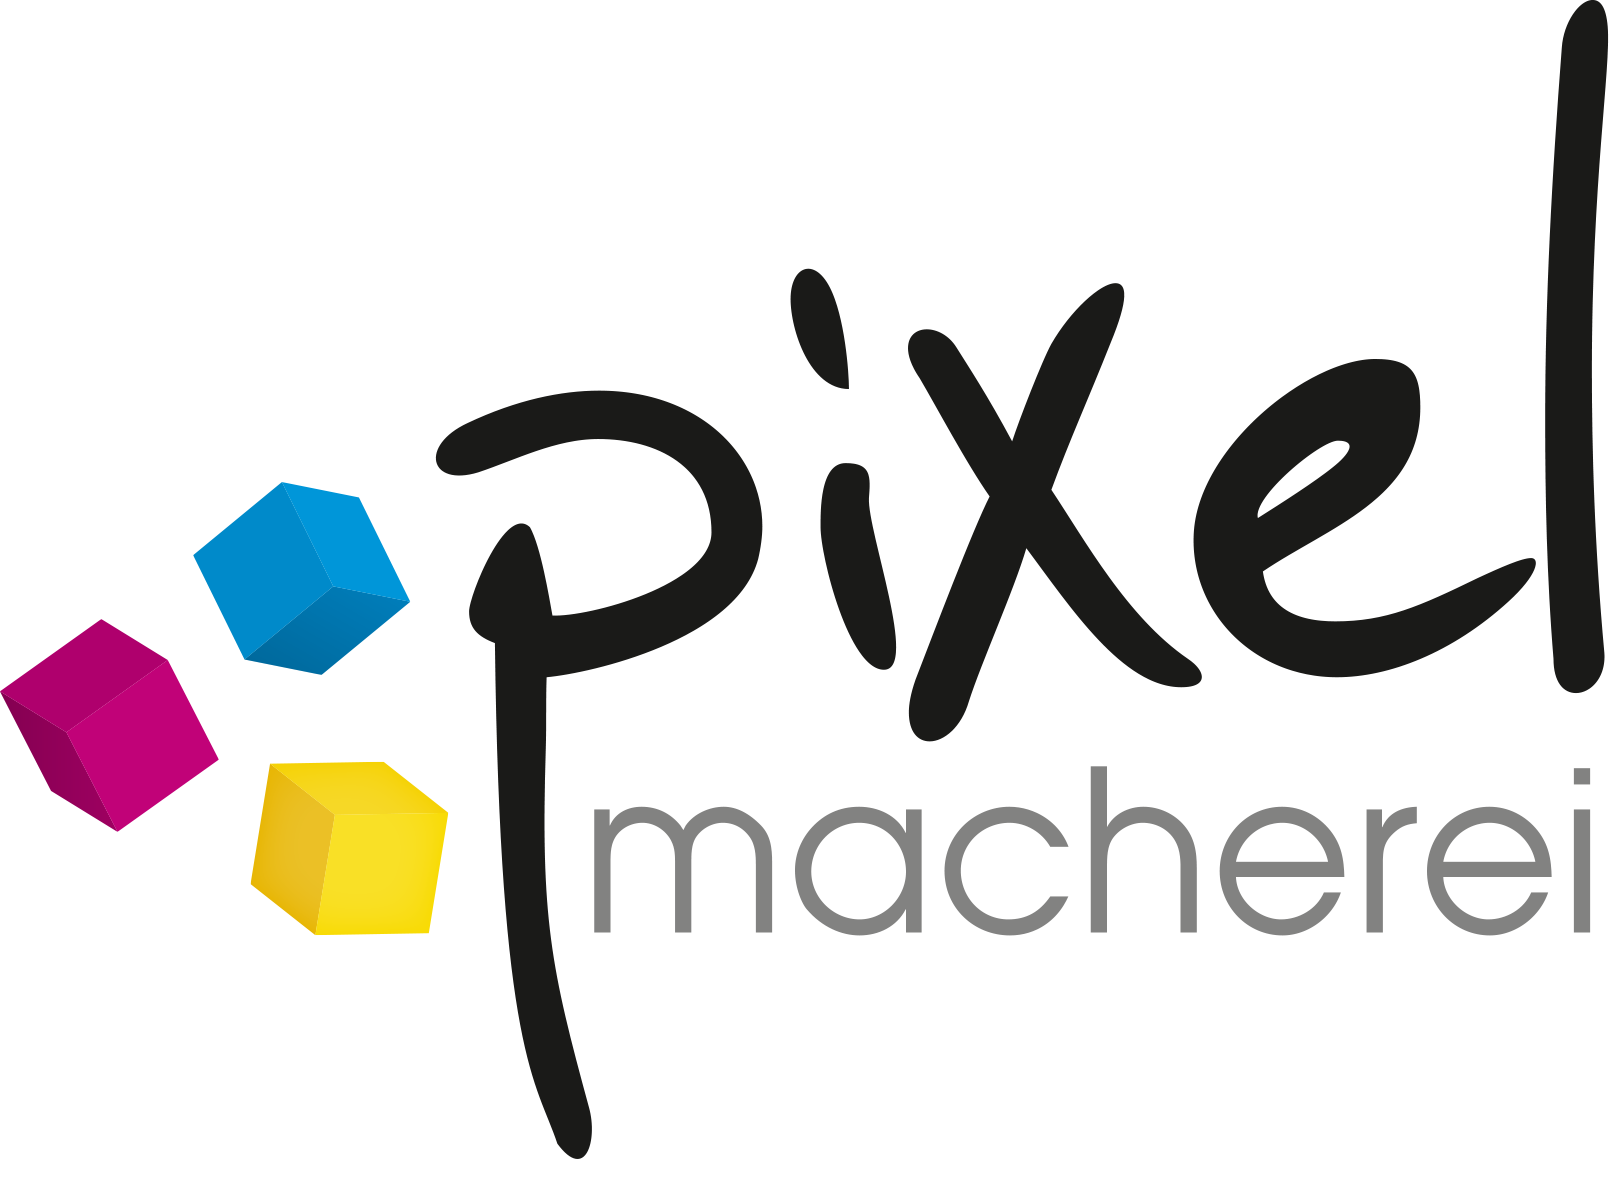 Logo pixelmacherei